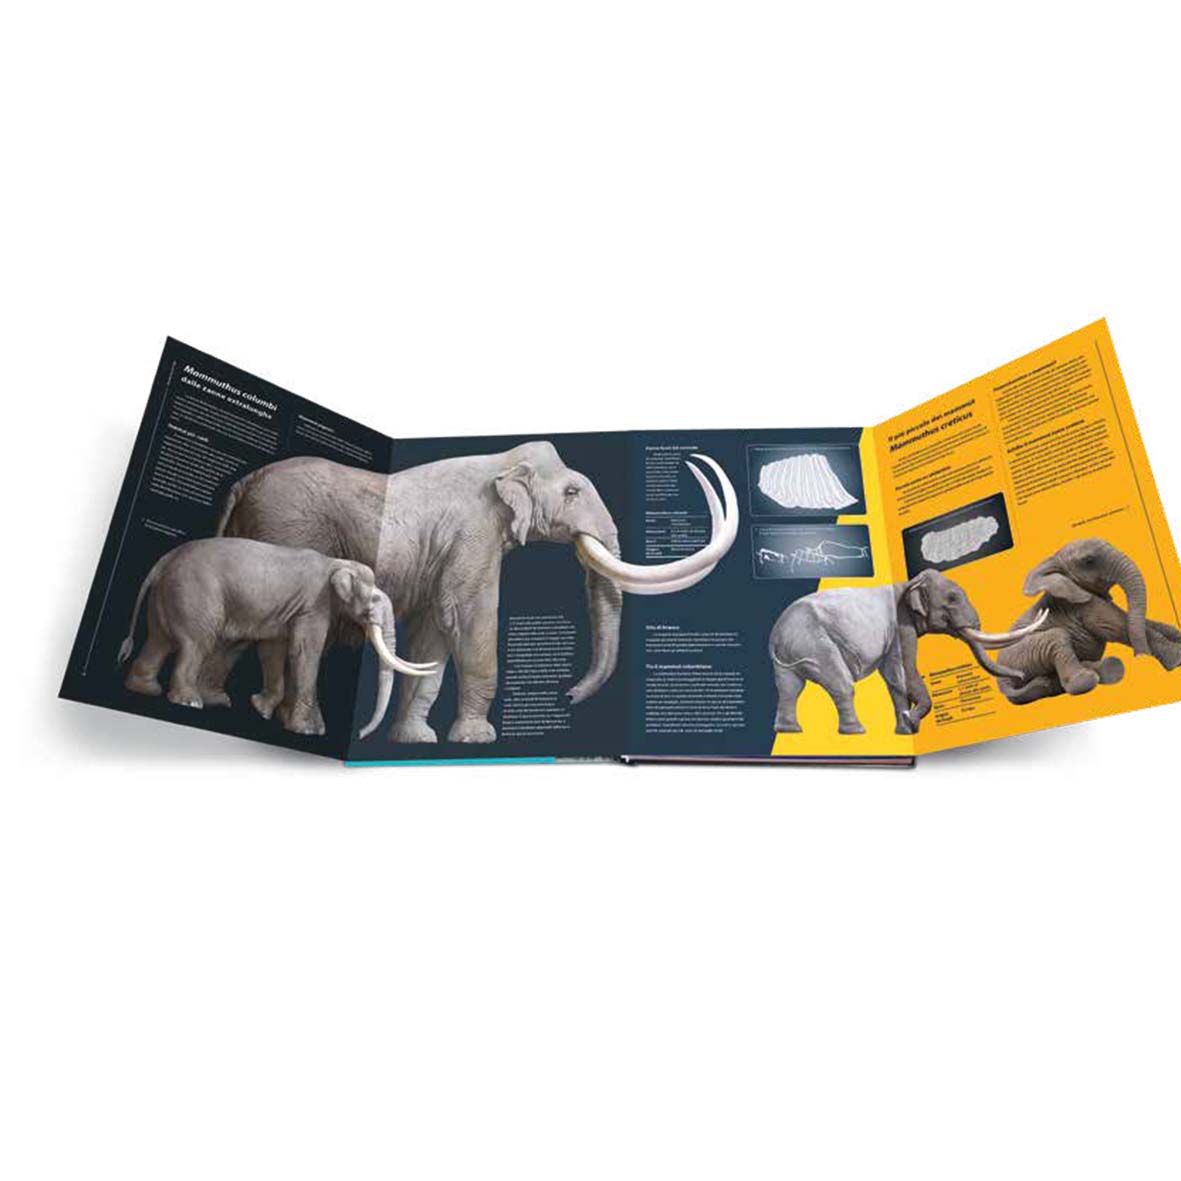 Sulle orme dei mammut - Dai primi proboscidati agli elefanti di oggi